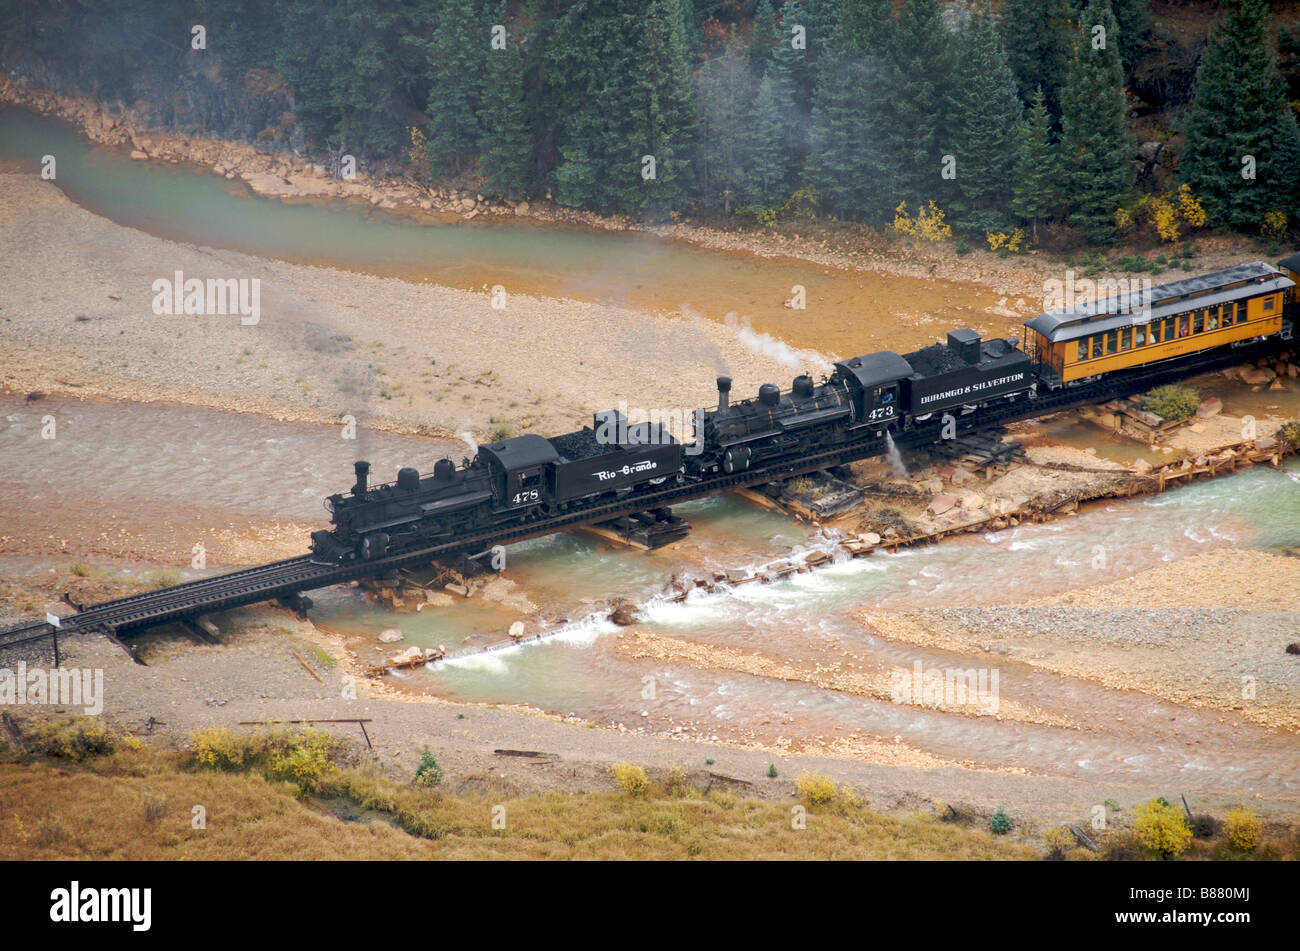 Vue aérienne de Durango Silverton Train à vapeur Colorado USA Banque D'Images